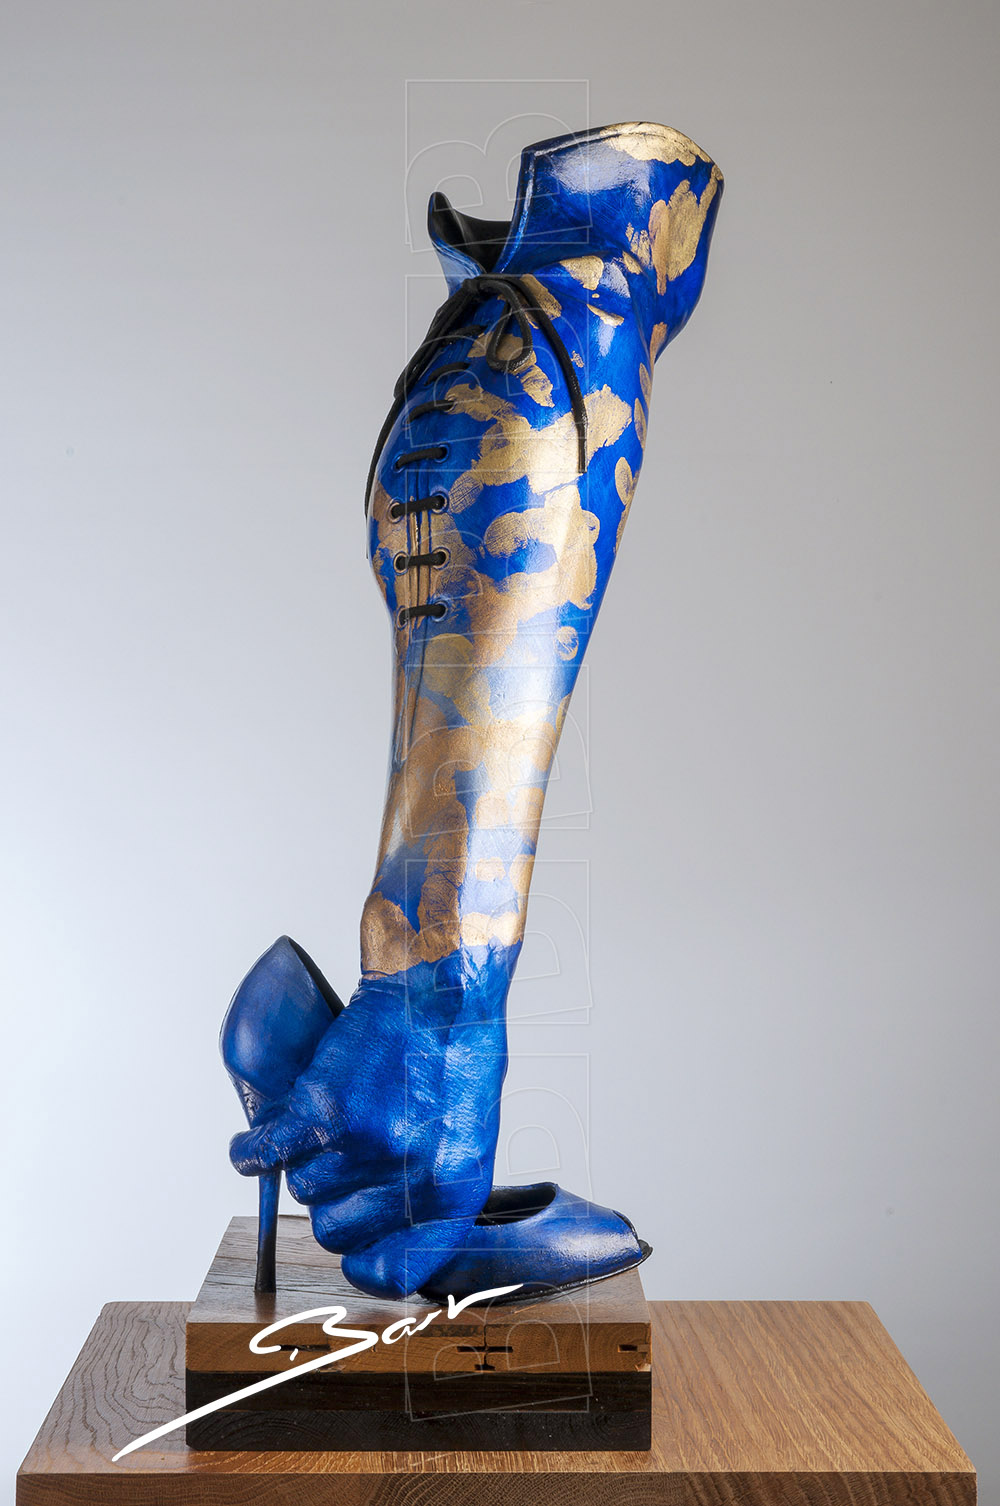 Sculptuur van hand, been en schoen die samen een laars vormen. Sculpture of hand, leg and shoe, together forming a boot.